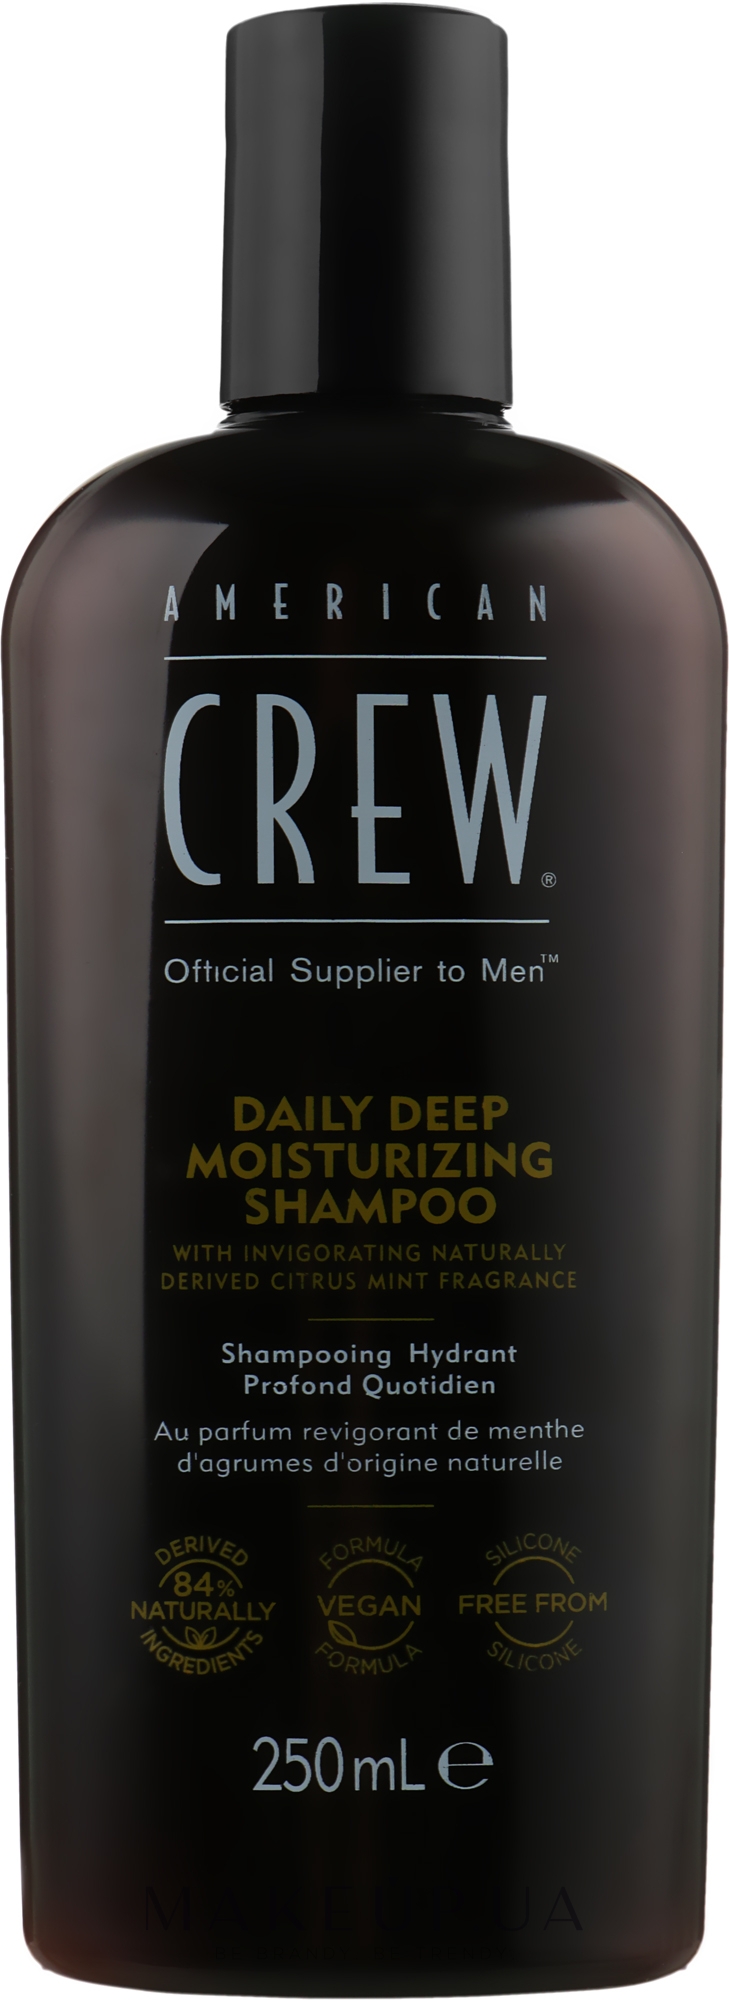 Шампунь для глибокого зволоження - American Crew Daily Deep Moisturizing Shampoo — фото 250ml